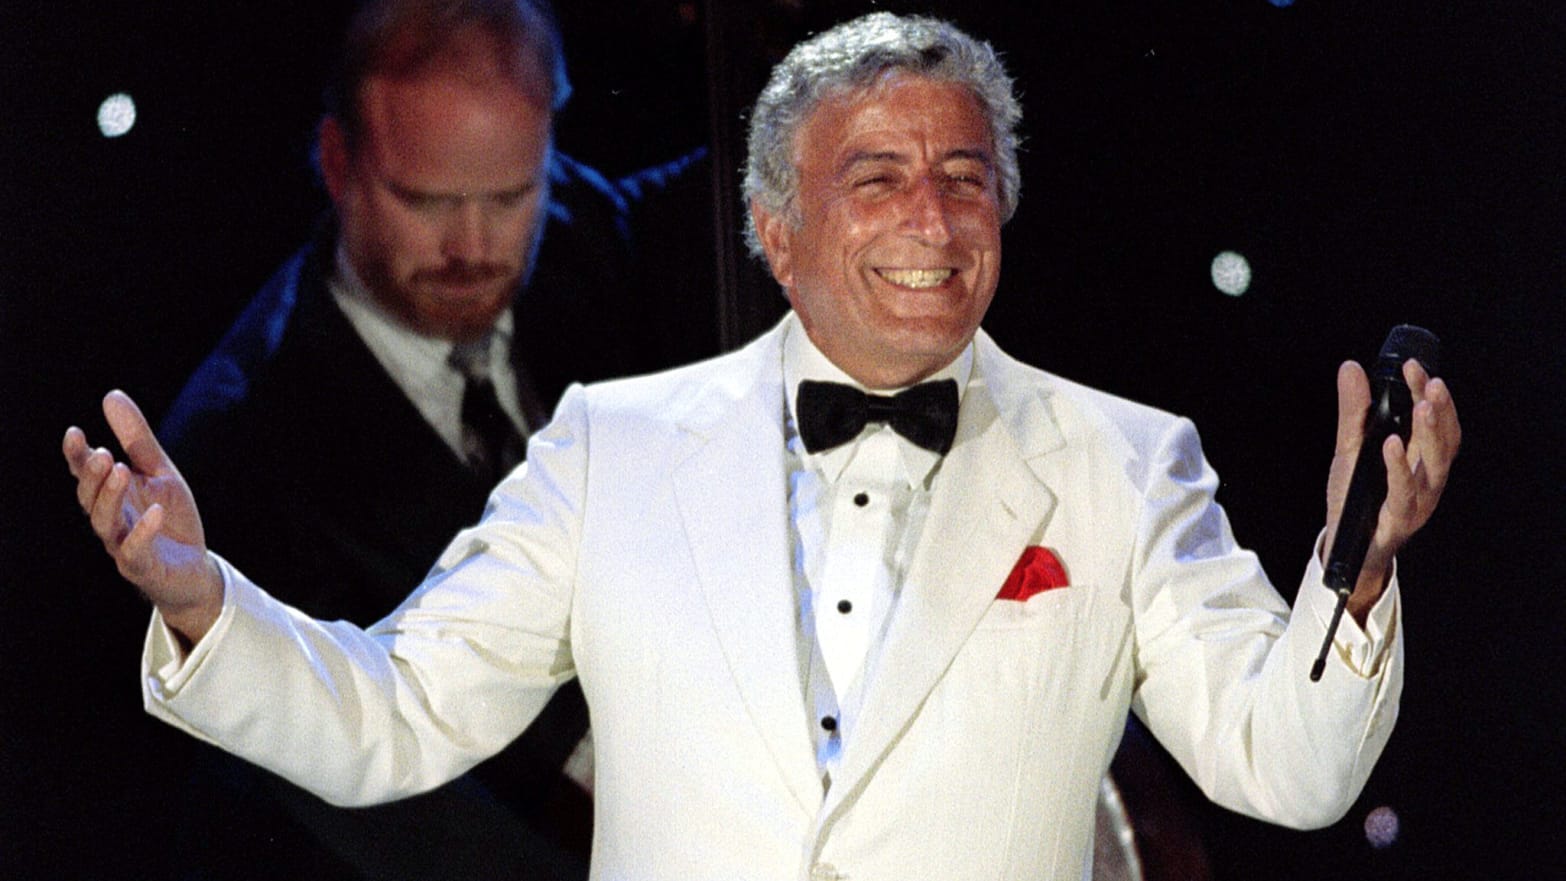 Tony Bennett, Legendary American Singer, Dies at 96